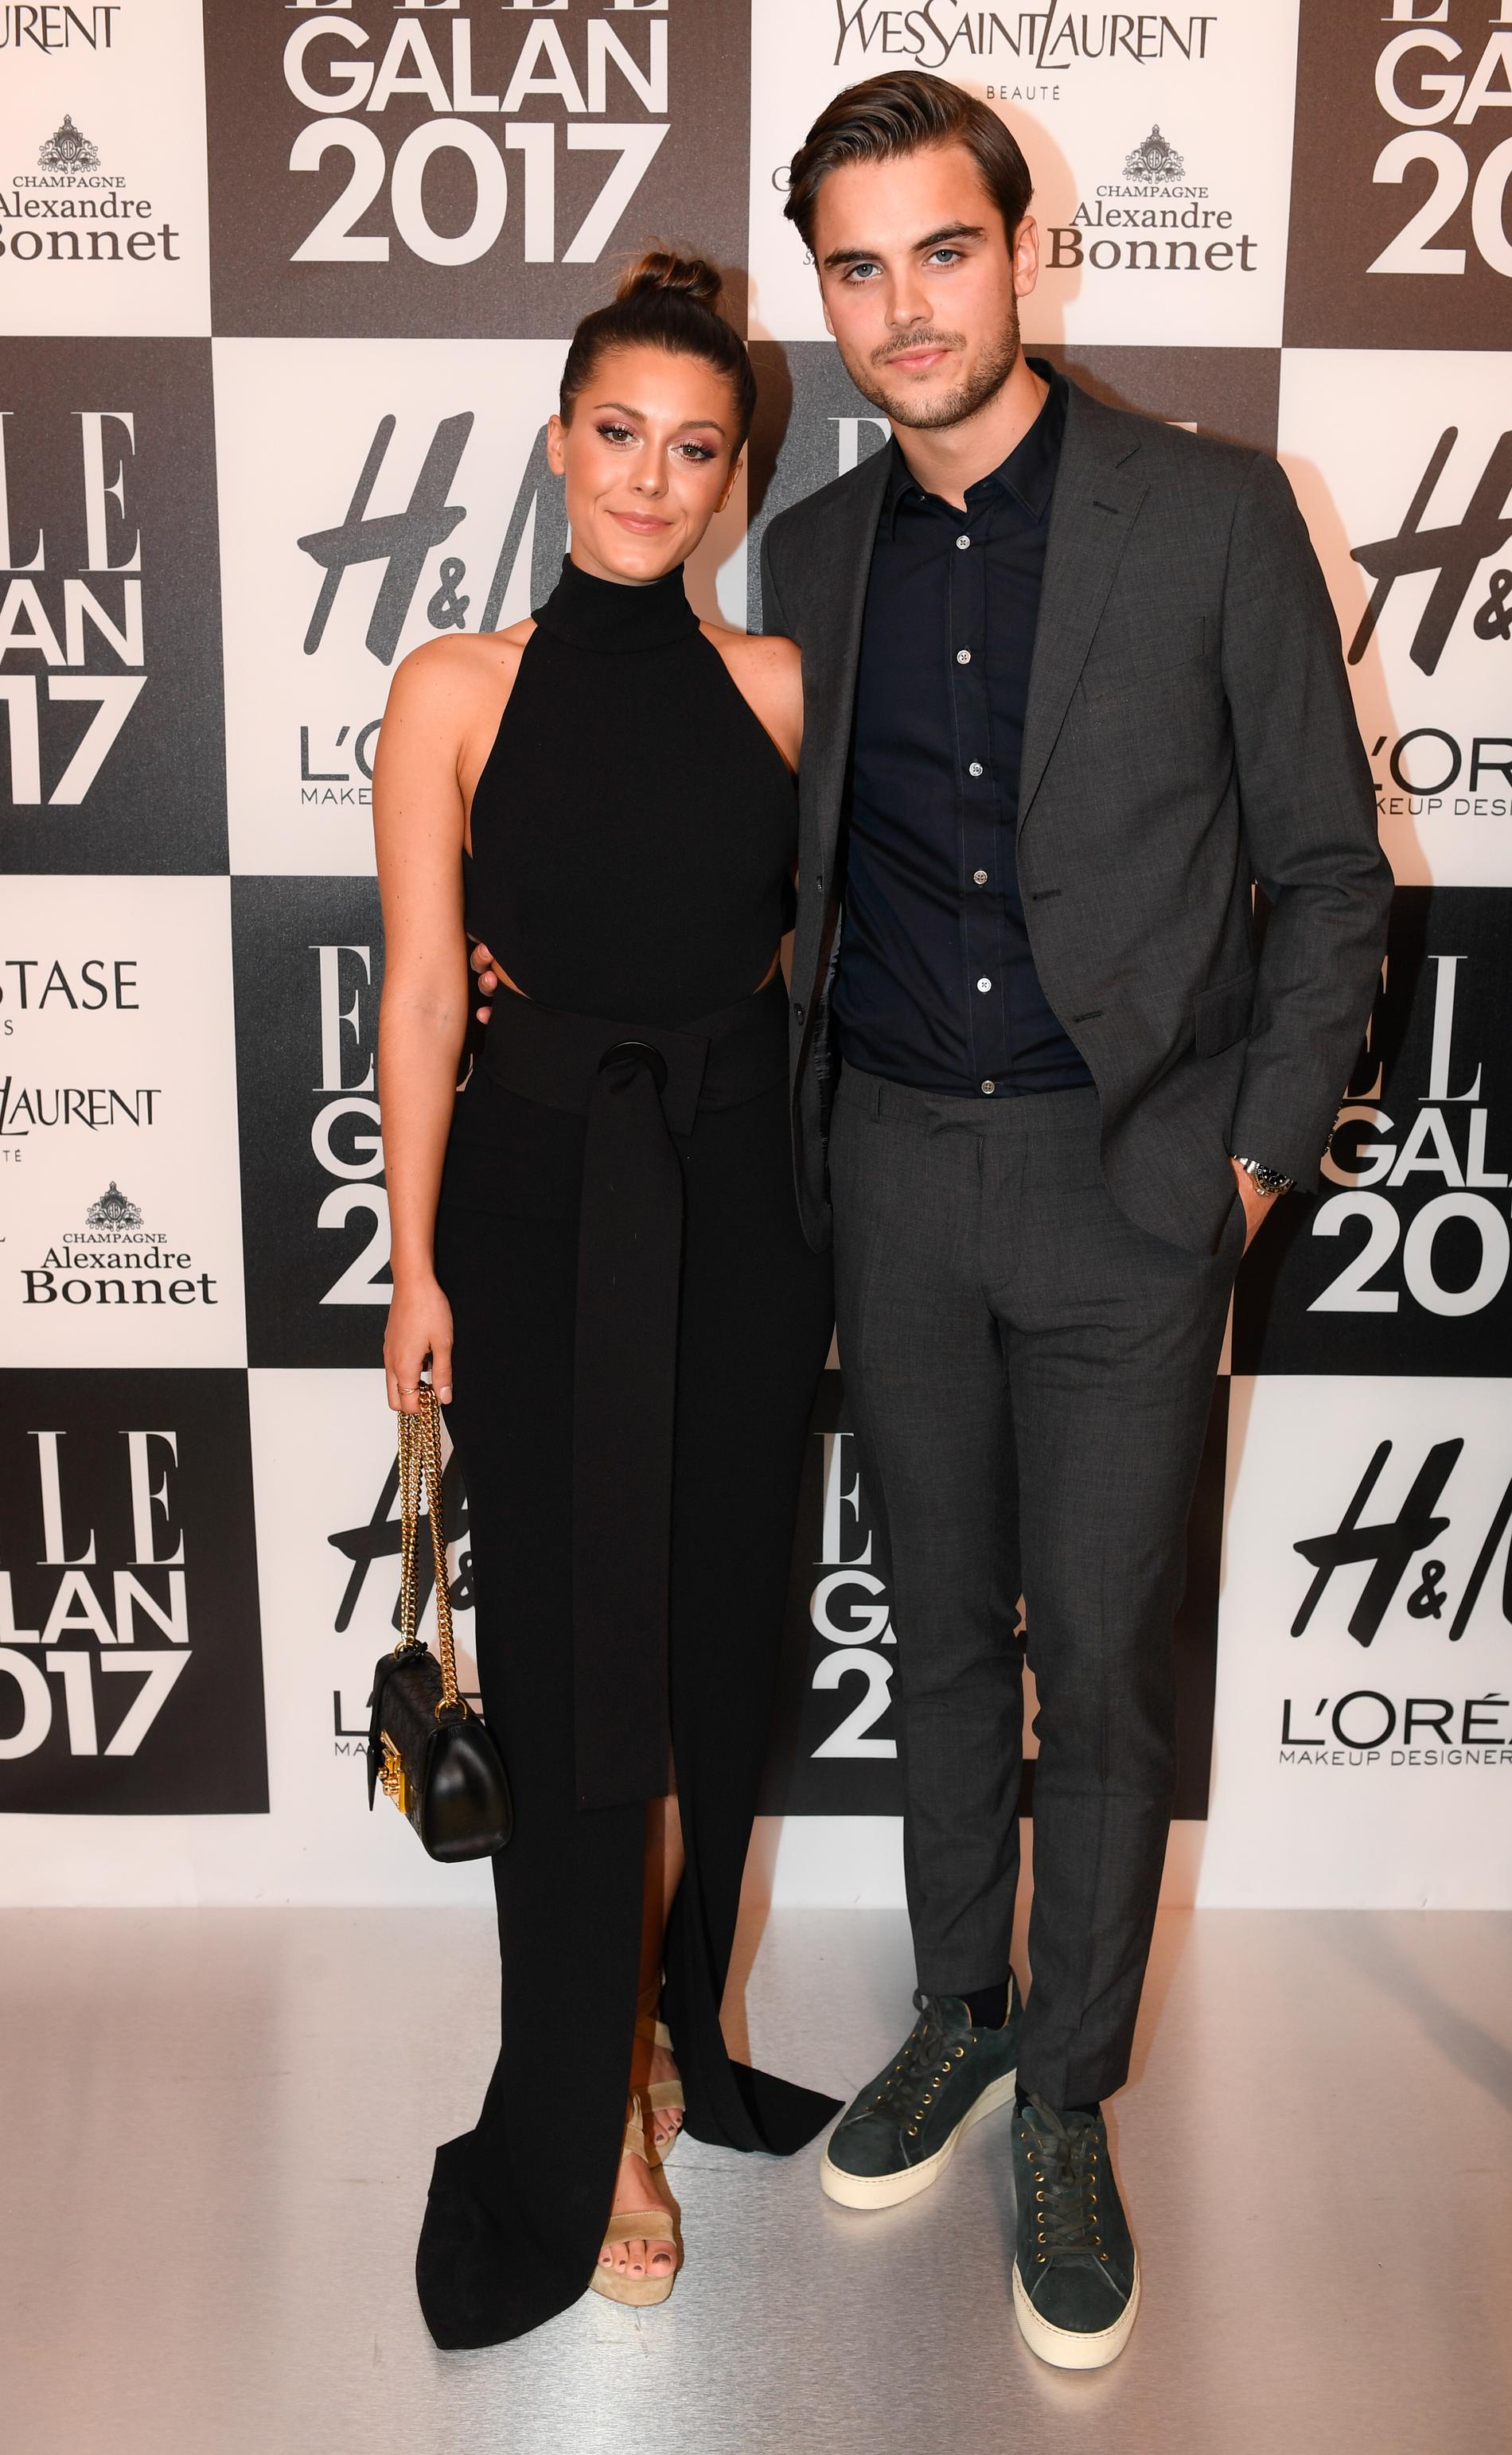 Bianca Wahlgren Ingrosso med pojkvänen Philippe .